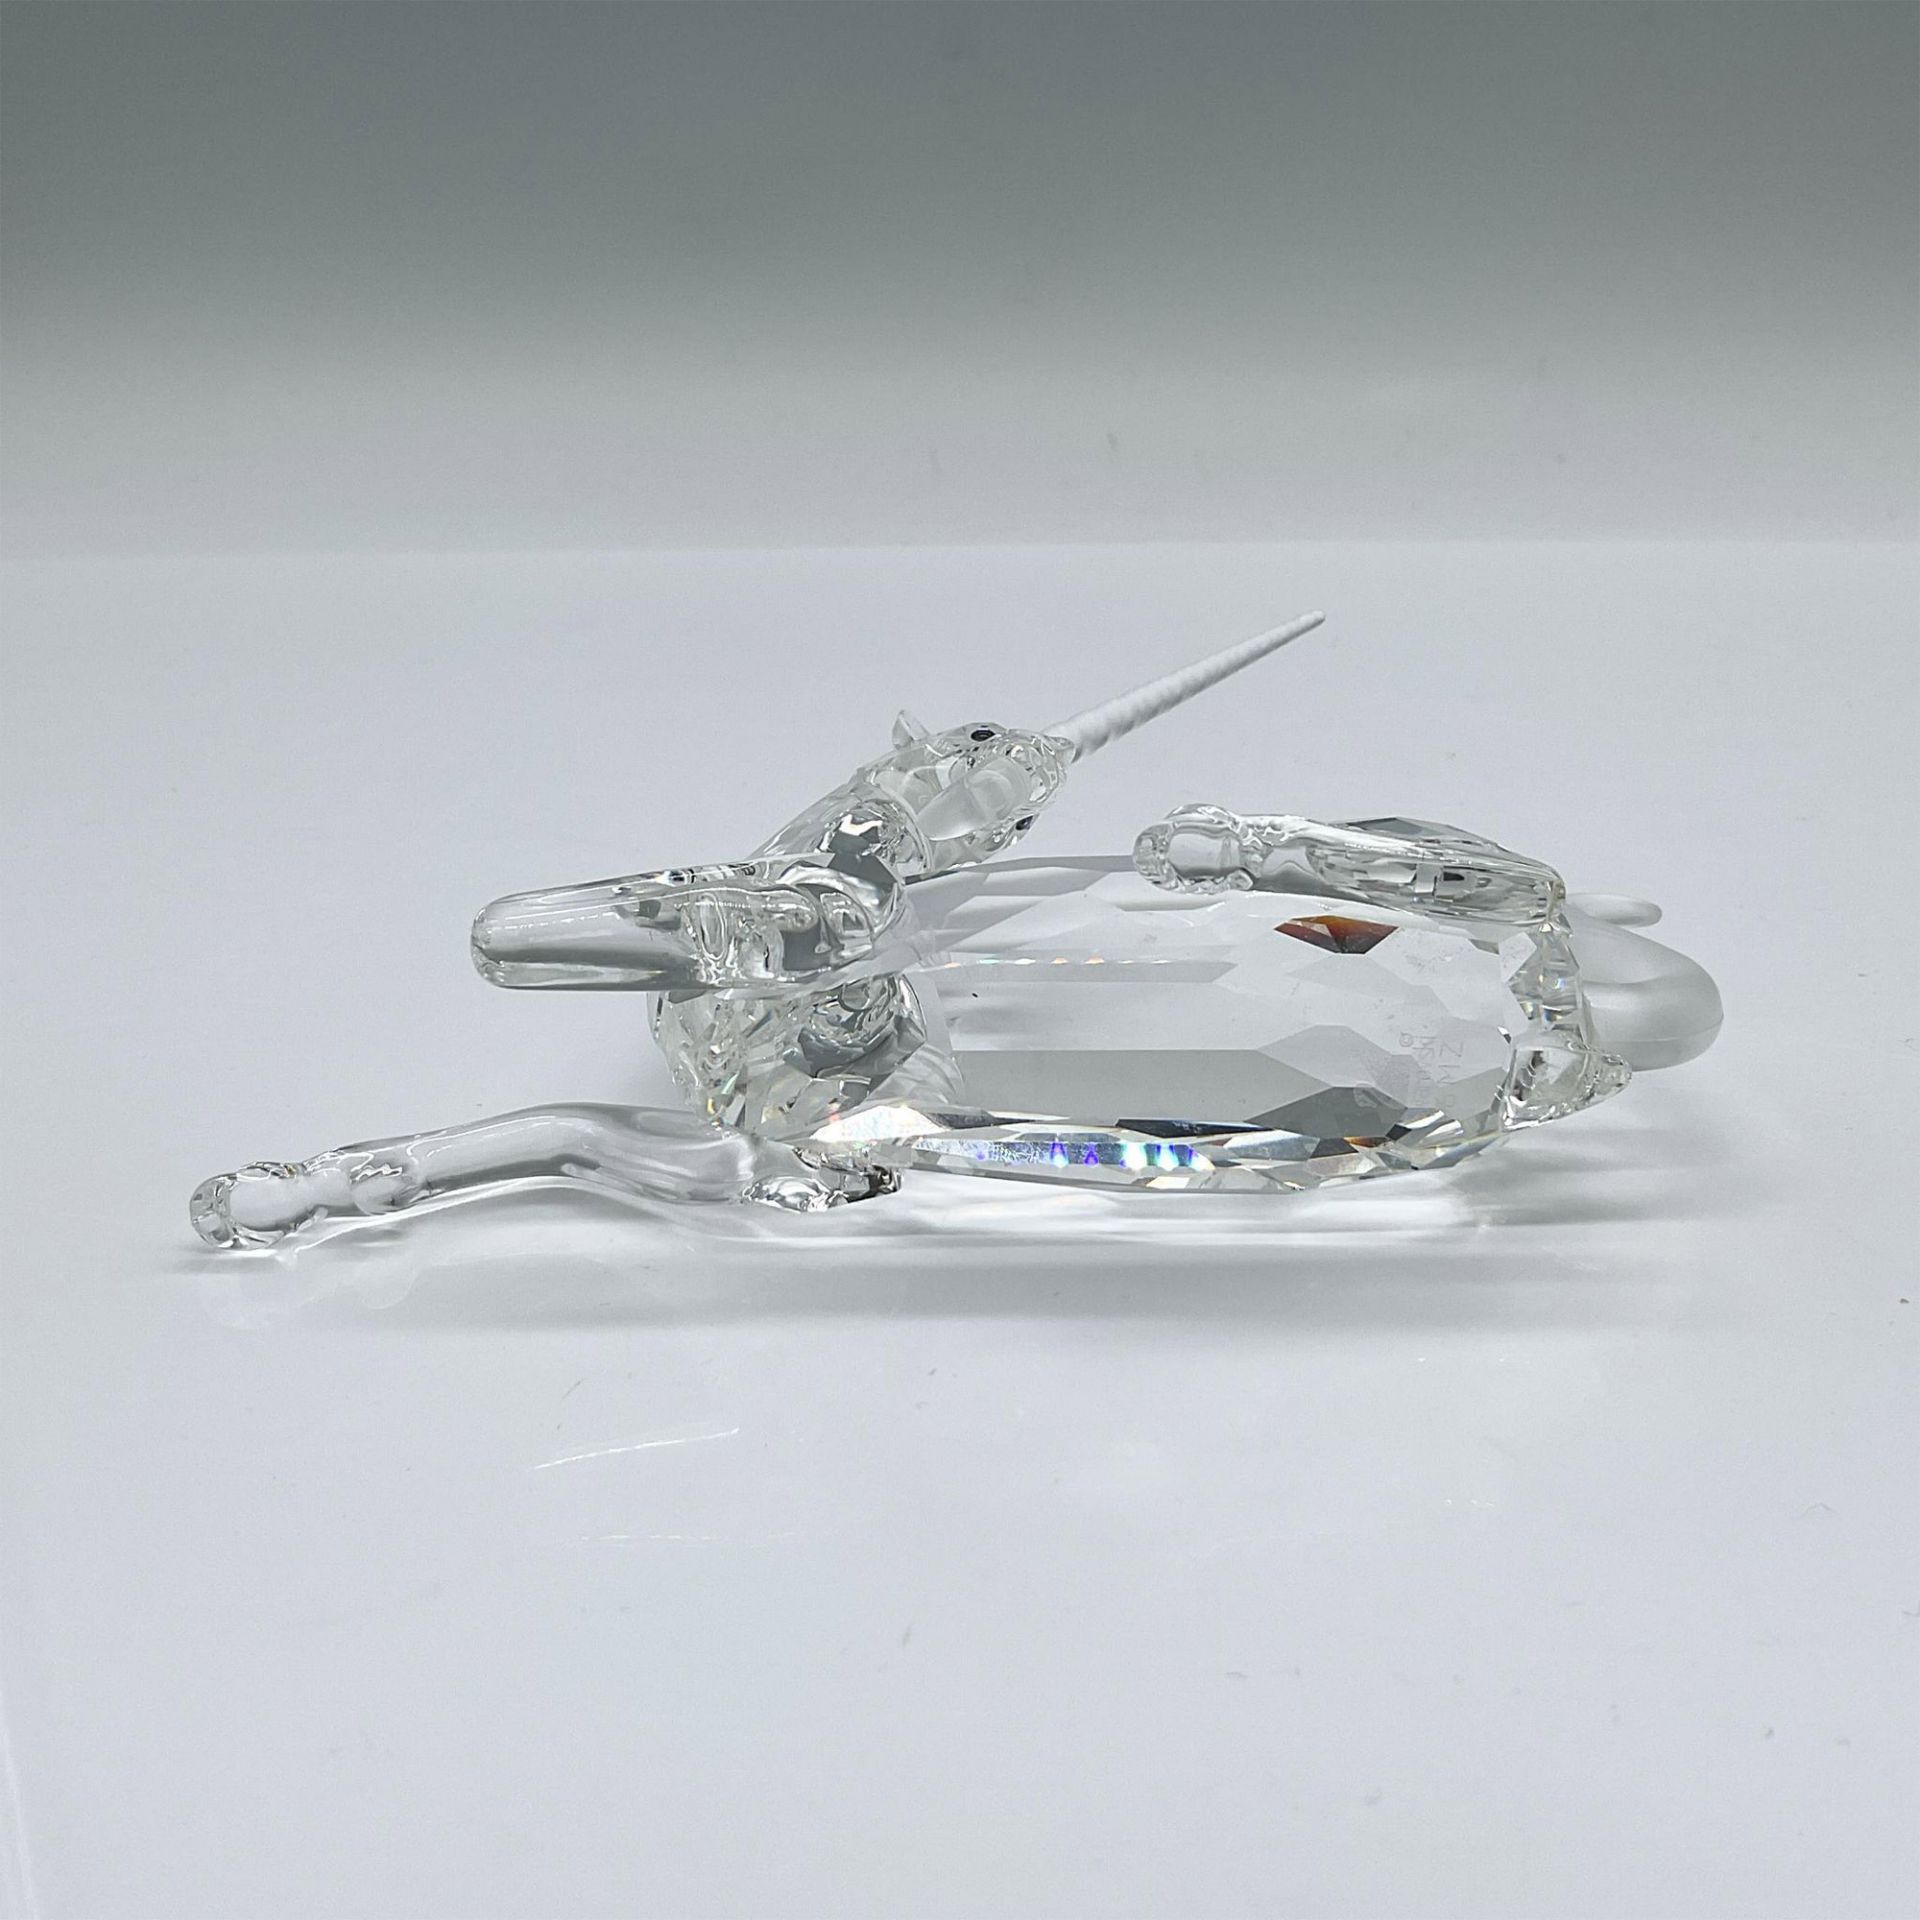 Swarovski Crystal Figurine, The Unicorn - Image 3 of 3